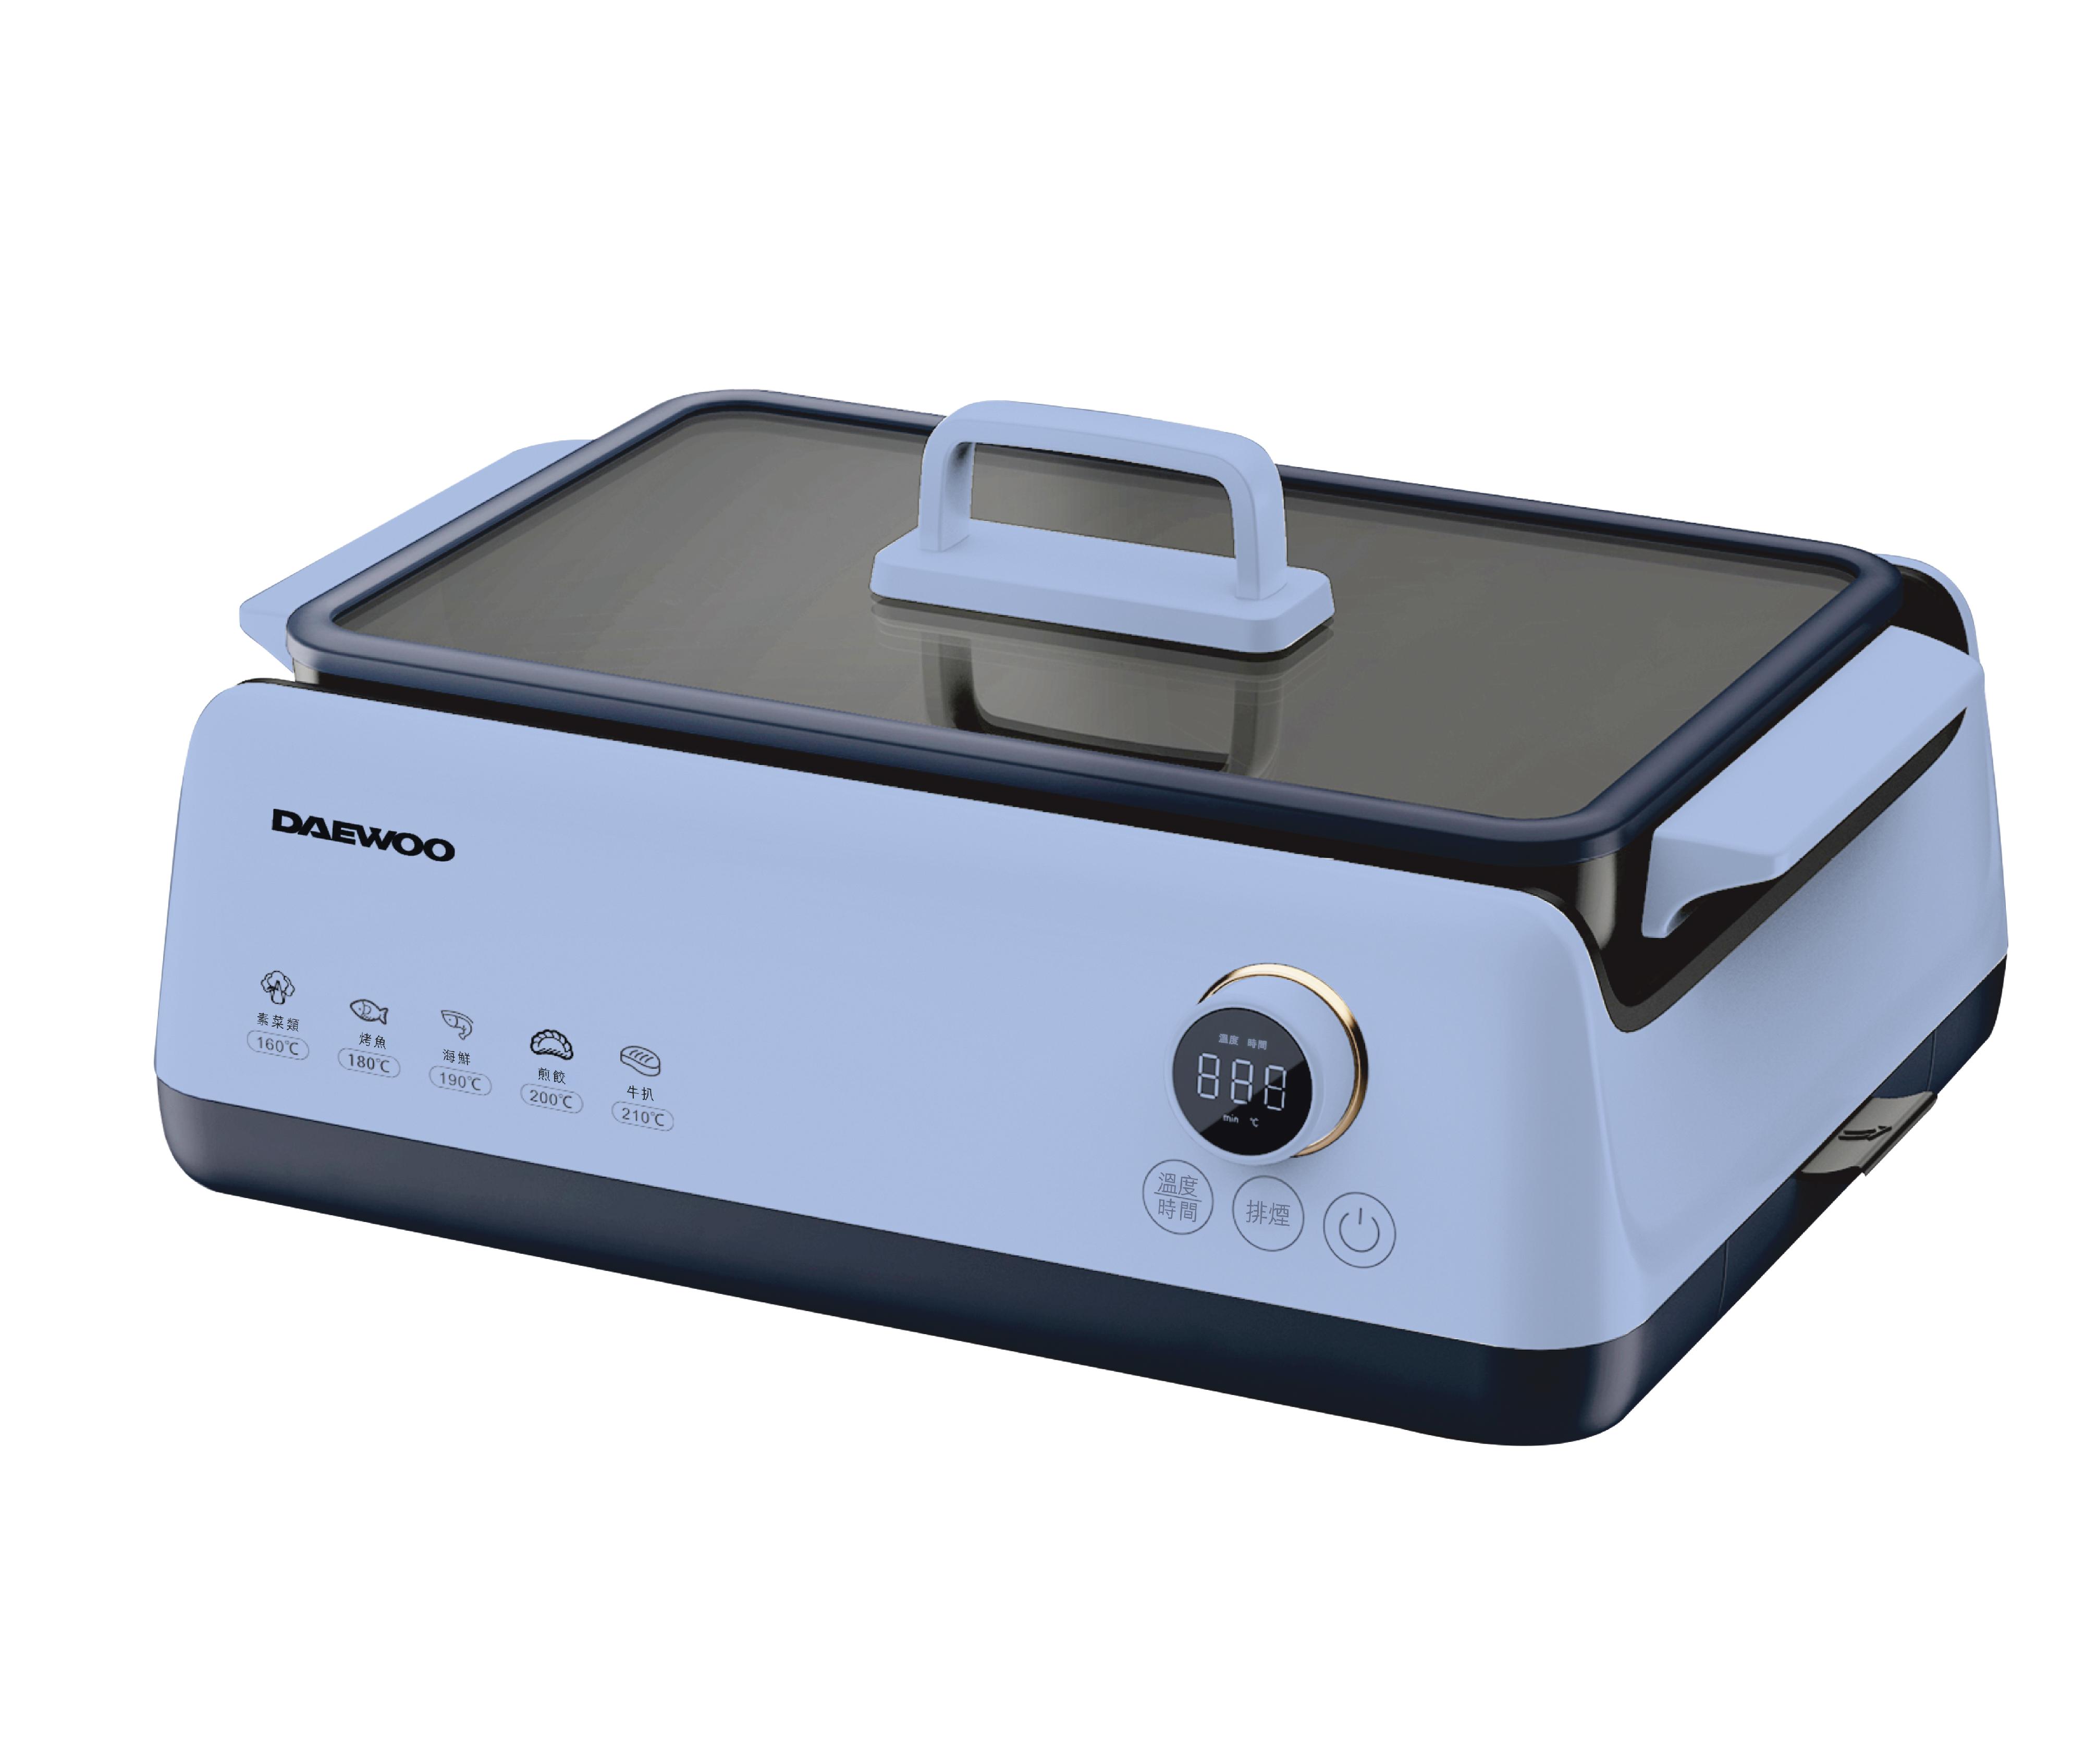 機電工程署今日（三月十五日）呼籲市民停用「Daewoo」牌一款型號為SG-2717C、外殼為藍色的電烤爐。圖示該款電烤爐。